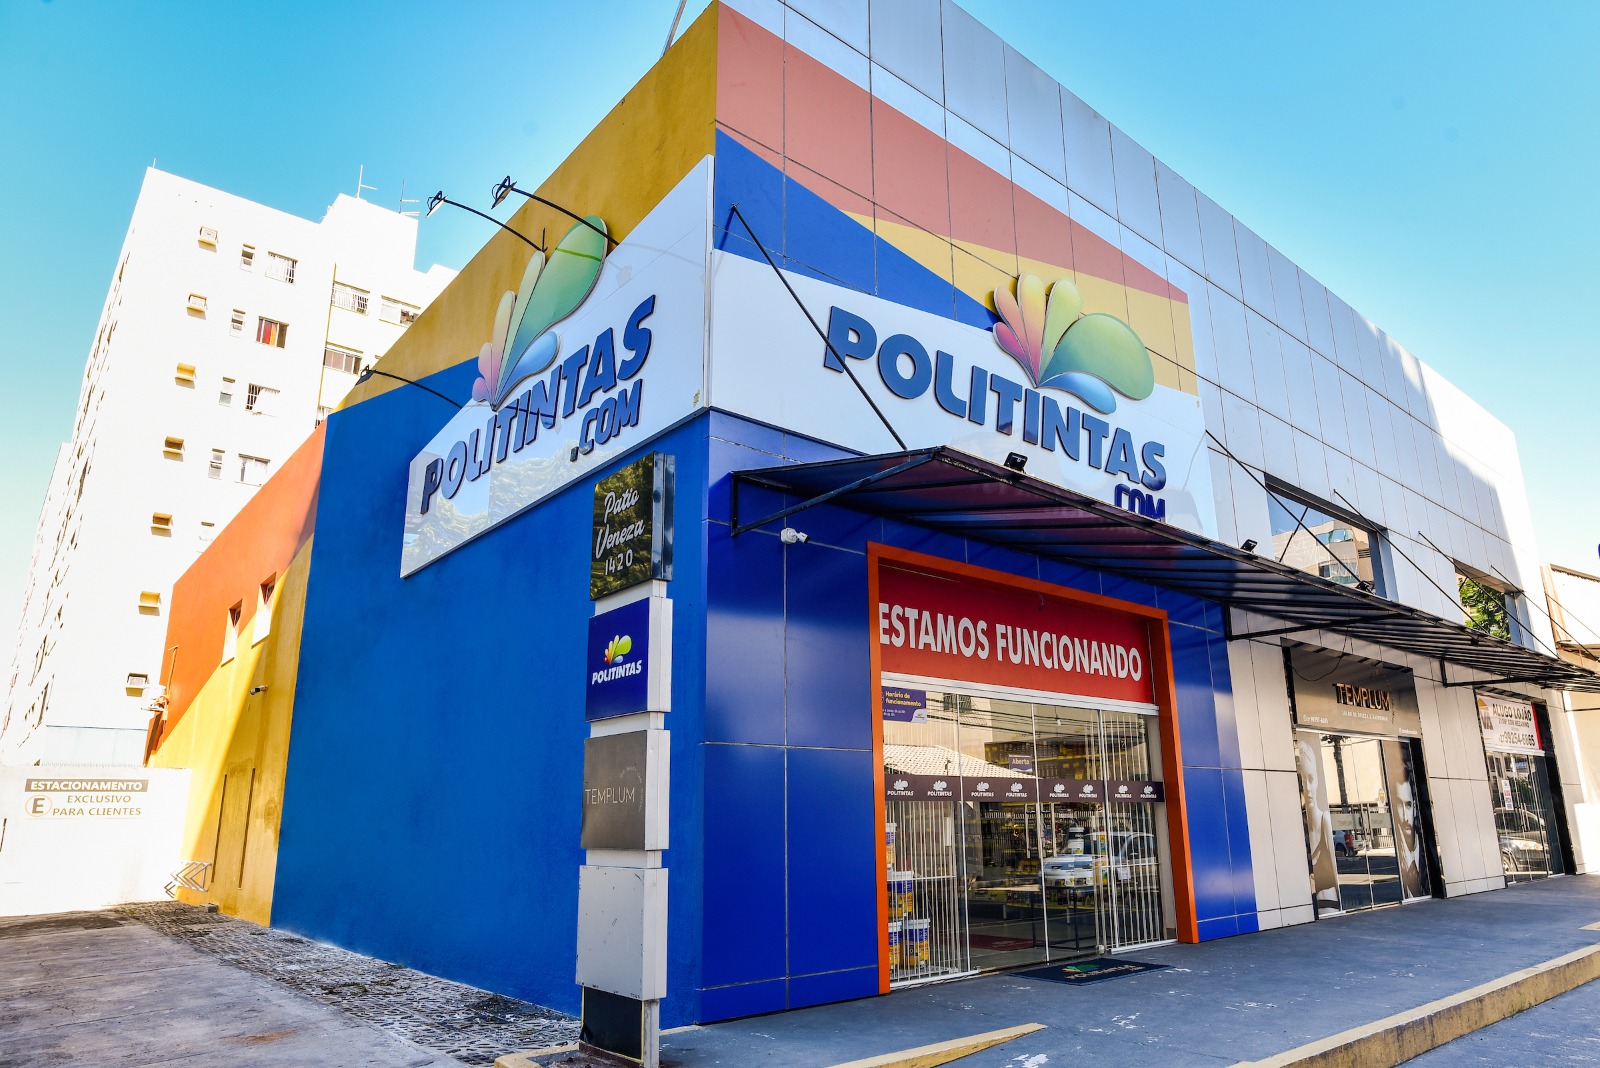 A nova loja está localizada no coração do bairro, na Rua Carlos Martins. Lá, o consumidor encontra tudo o que precisa para pintar a casa, o ambiente de trabalho, o piso, o muro, e muito mais